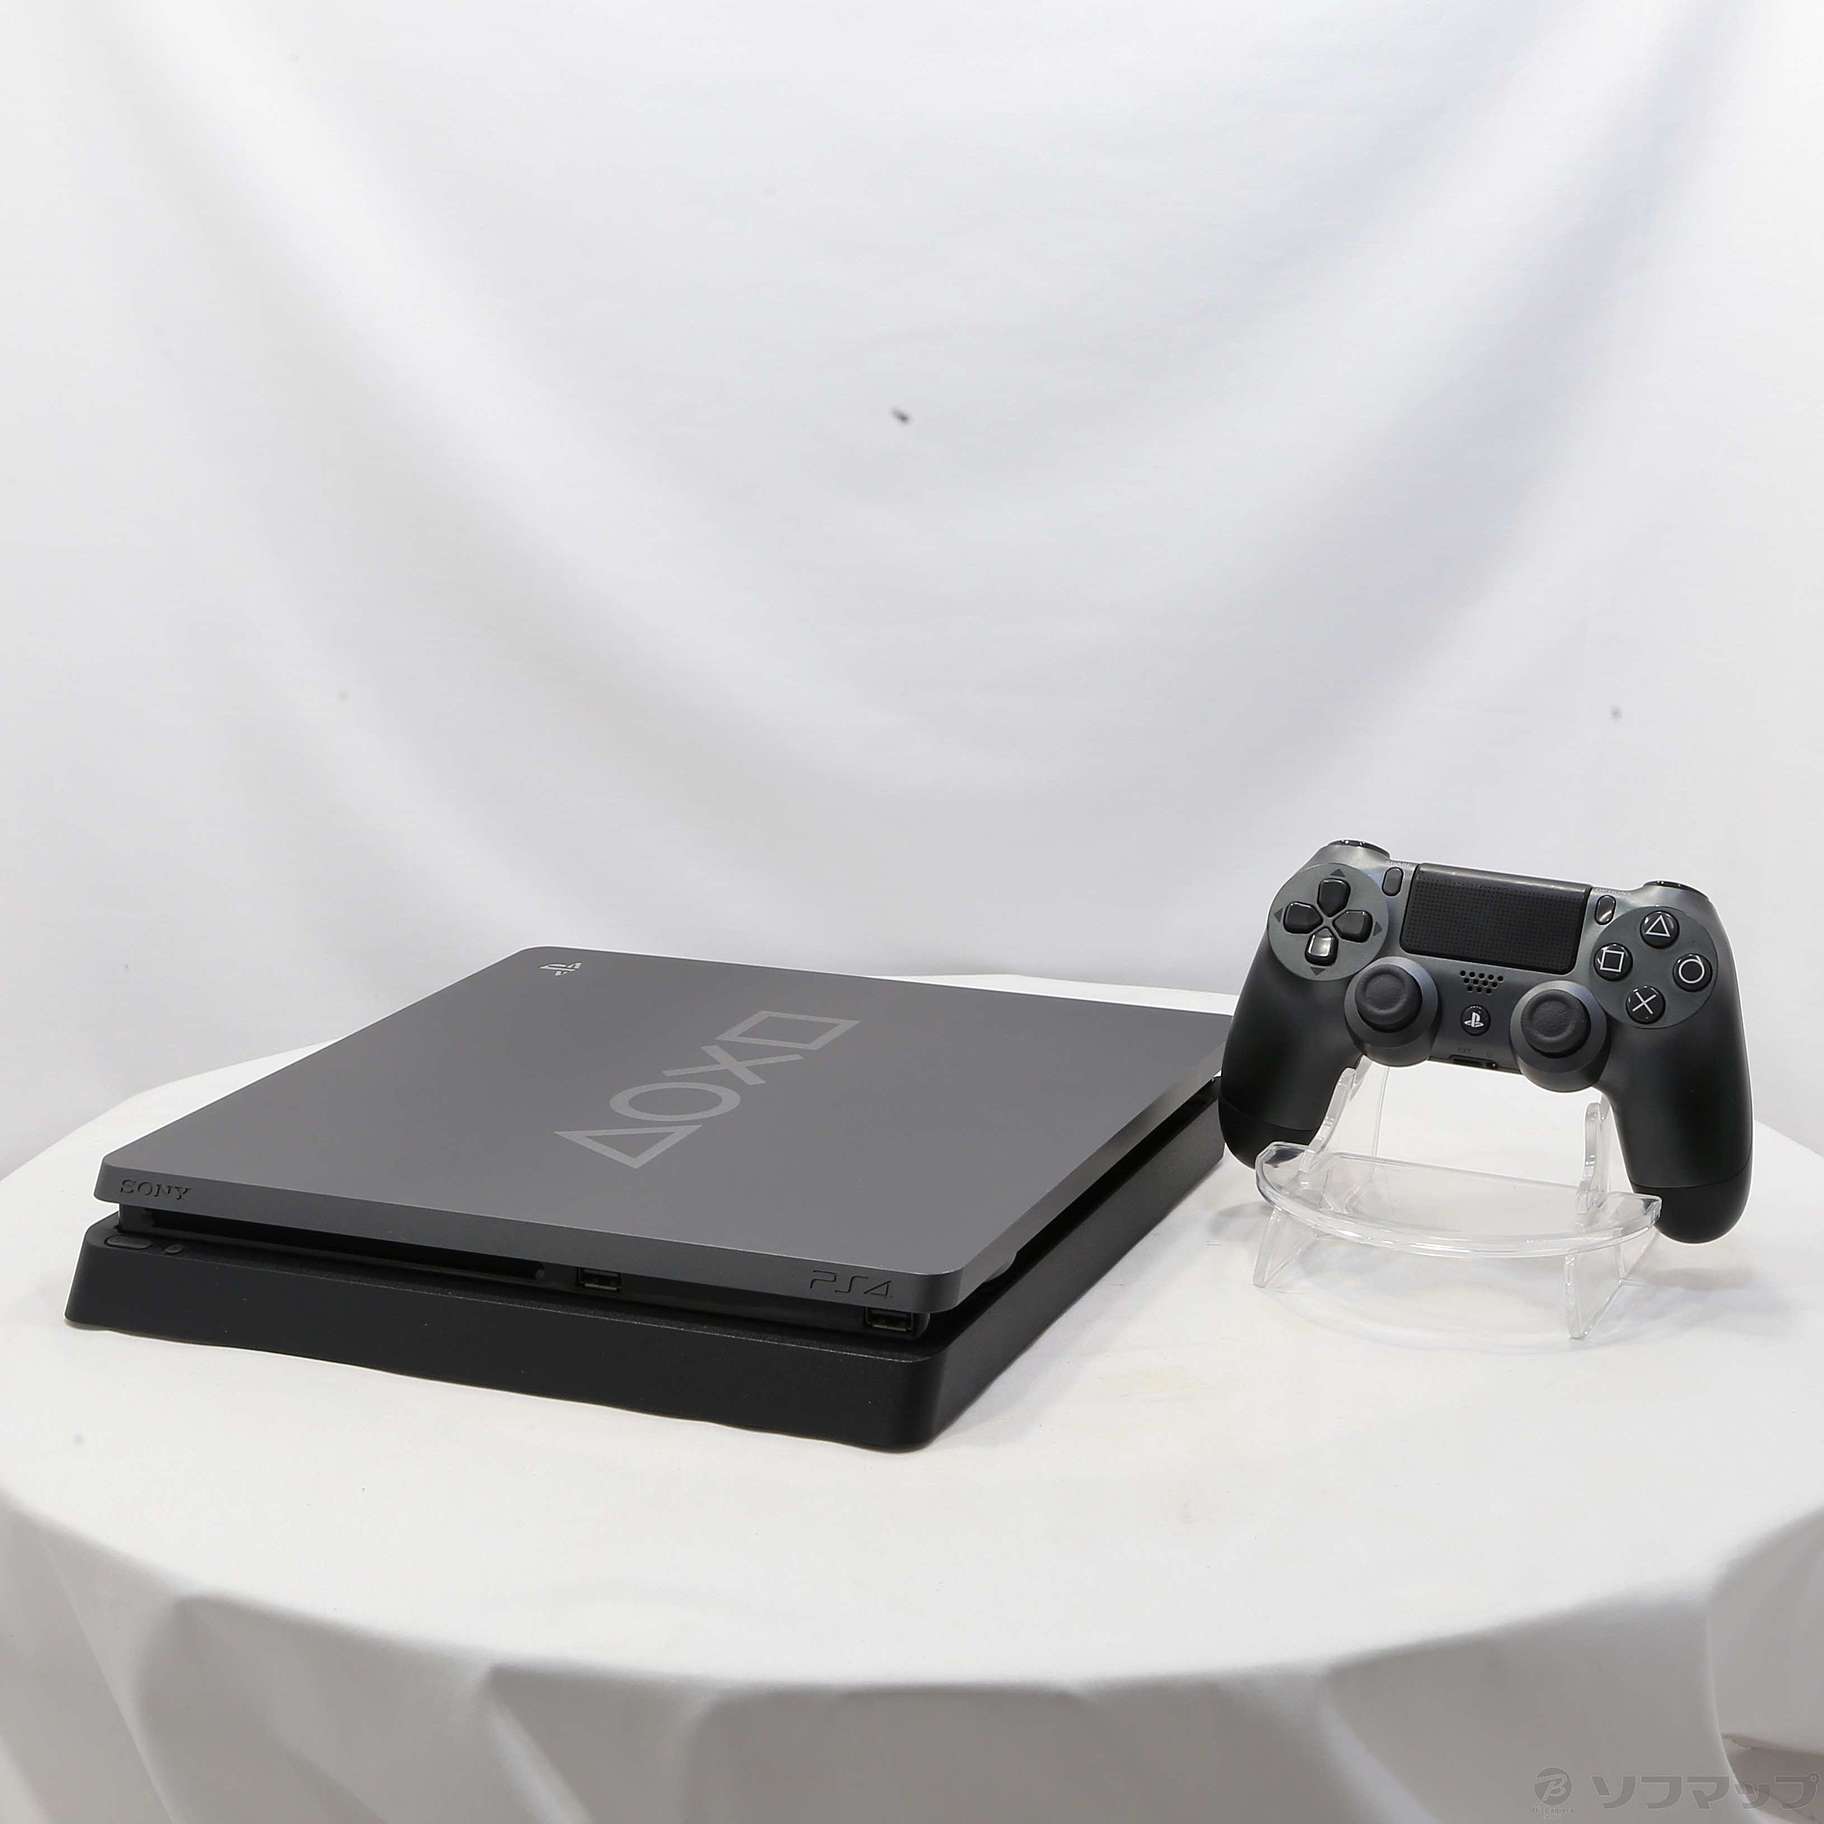 中古品〕 PlayStation4 Days of Play Limited Edition CUH-2200BBZR